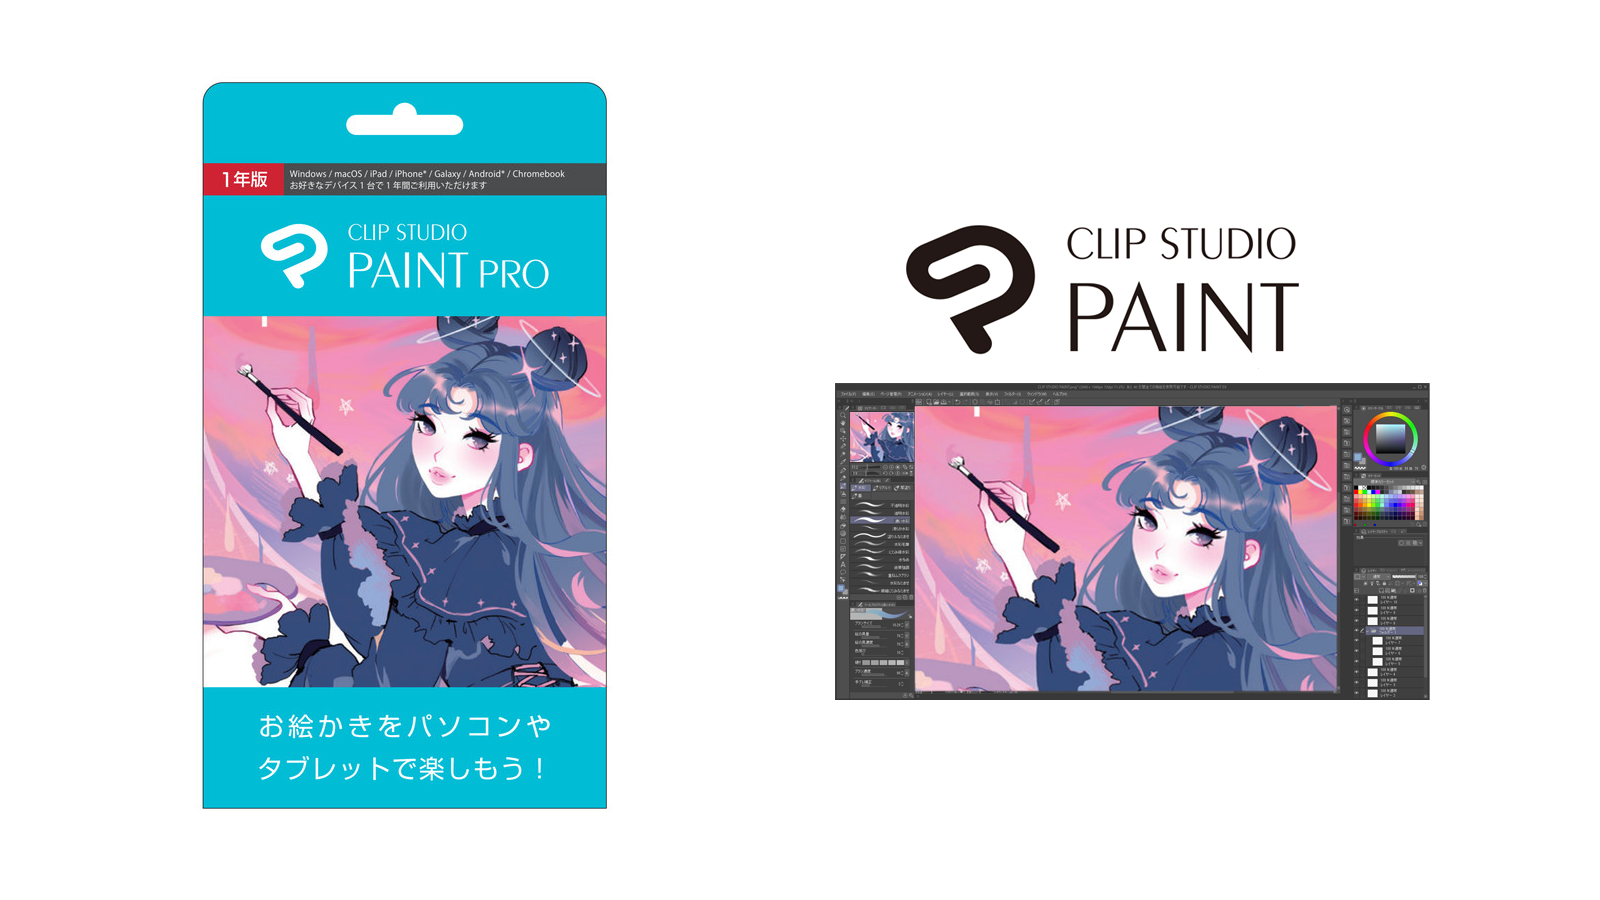 イラスト・マンガ・アニメーション制作ツール CLIP STUDIO PAINT PRO 1年版を全国量販店で発売